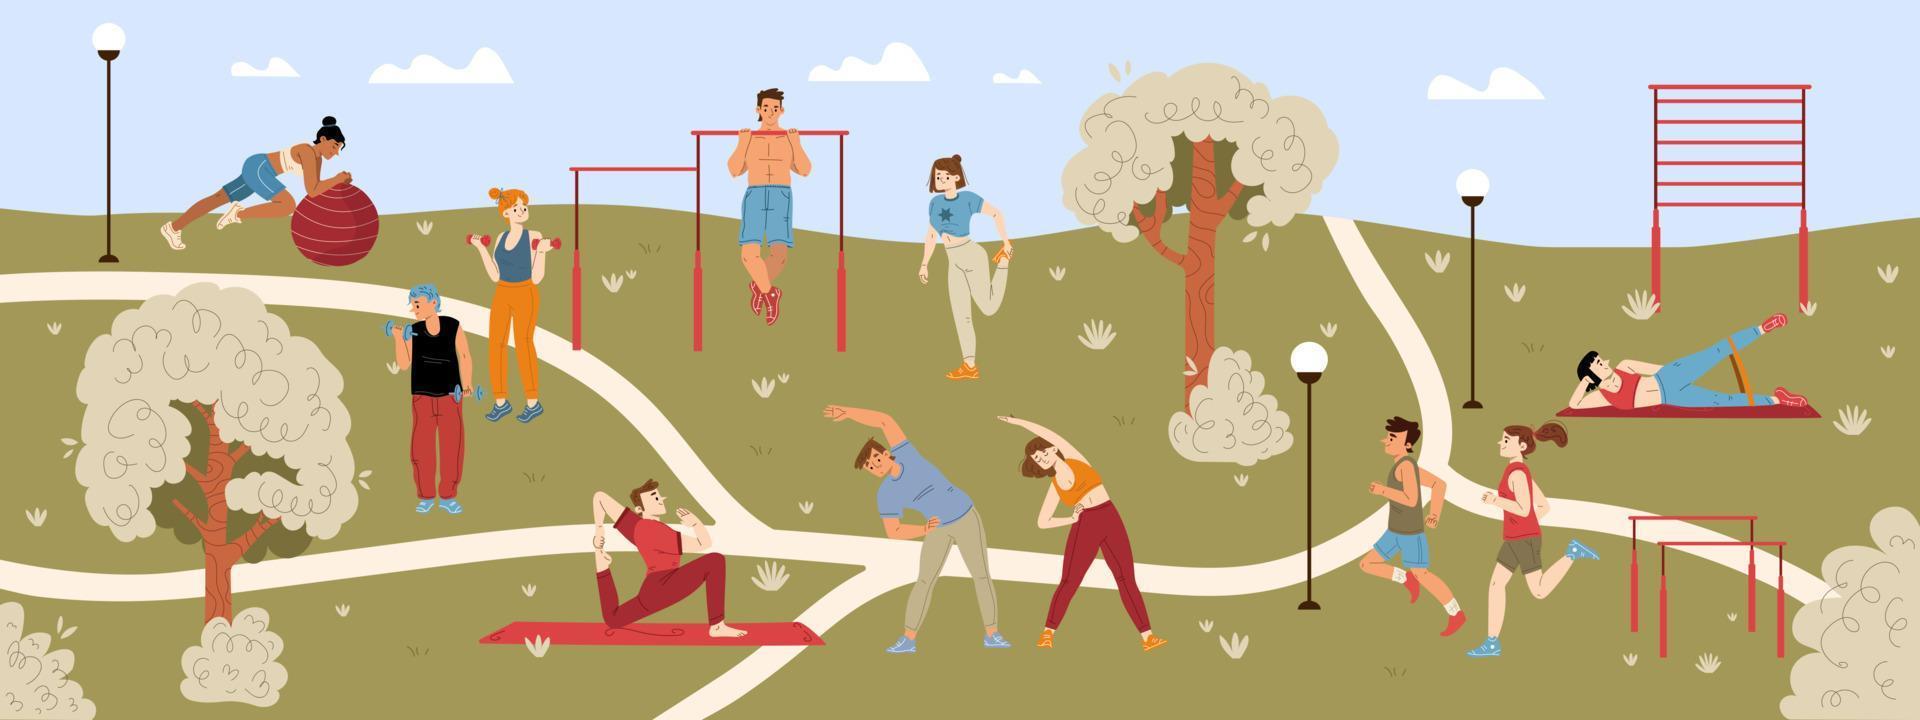 persone fare esercizio, fitness, jogging nel parco vettore